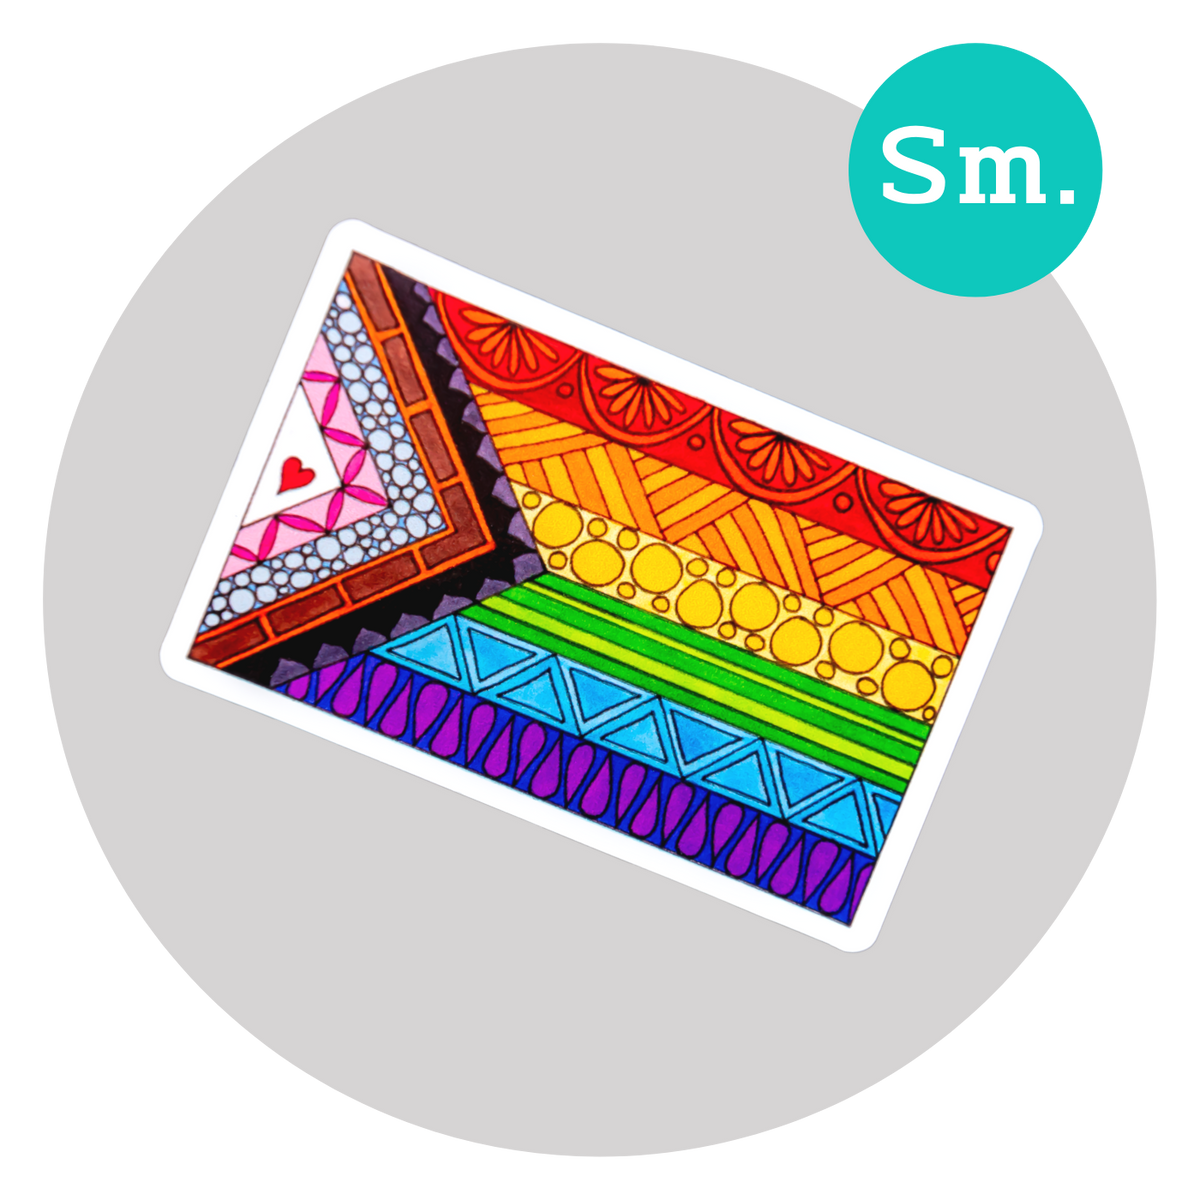 Pride Flag Sticker ⌲ Small 2.75"x1.75"